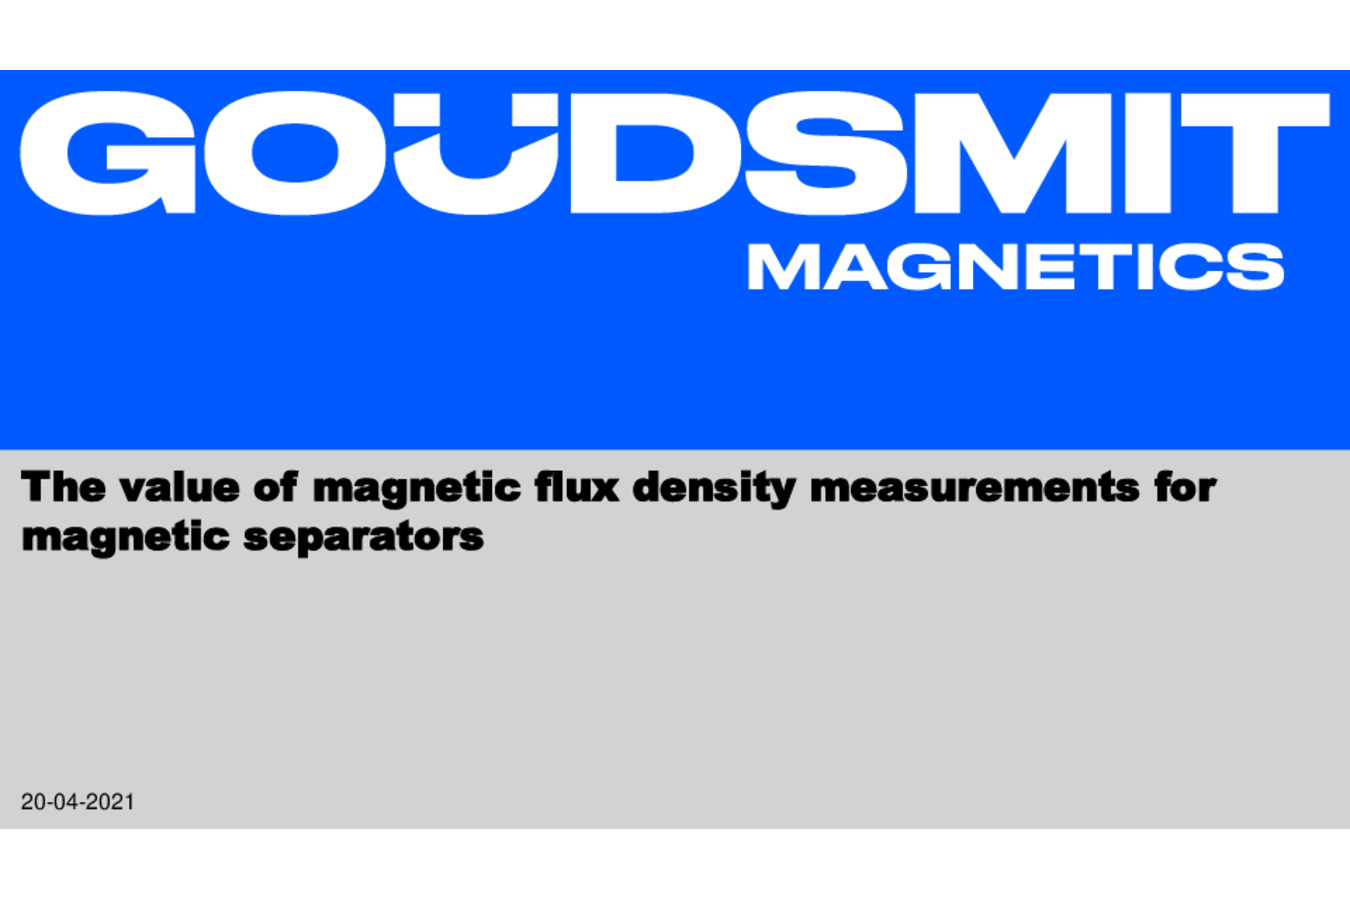 magnetic flux density